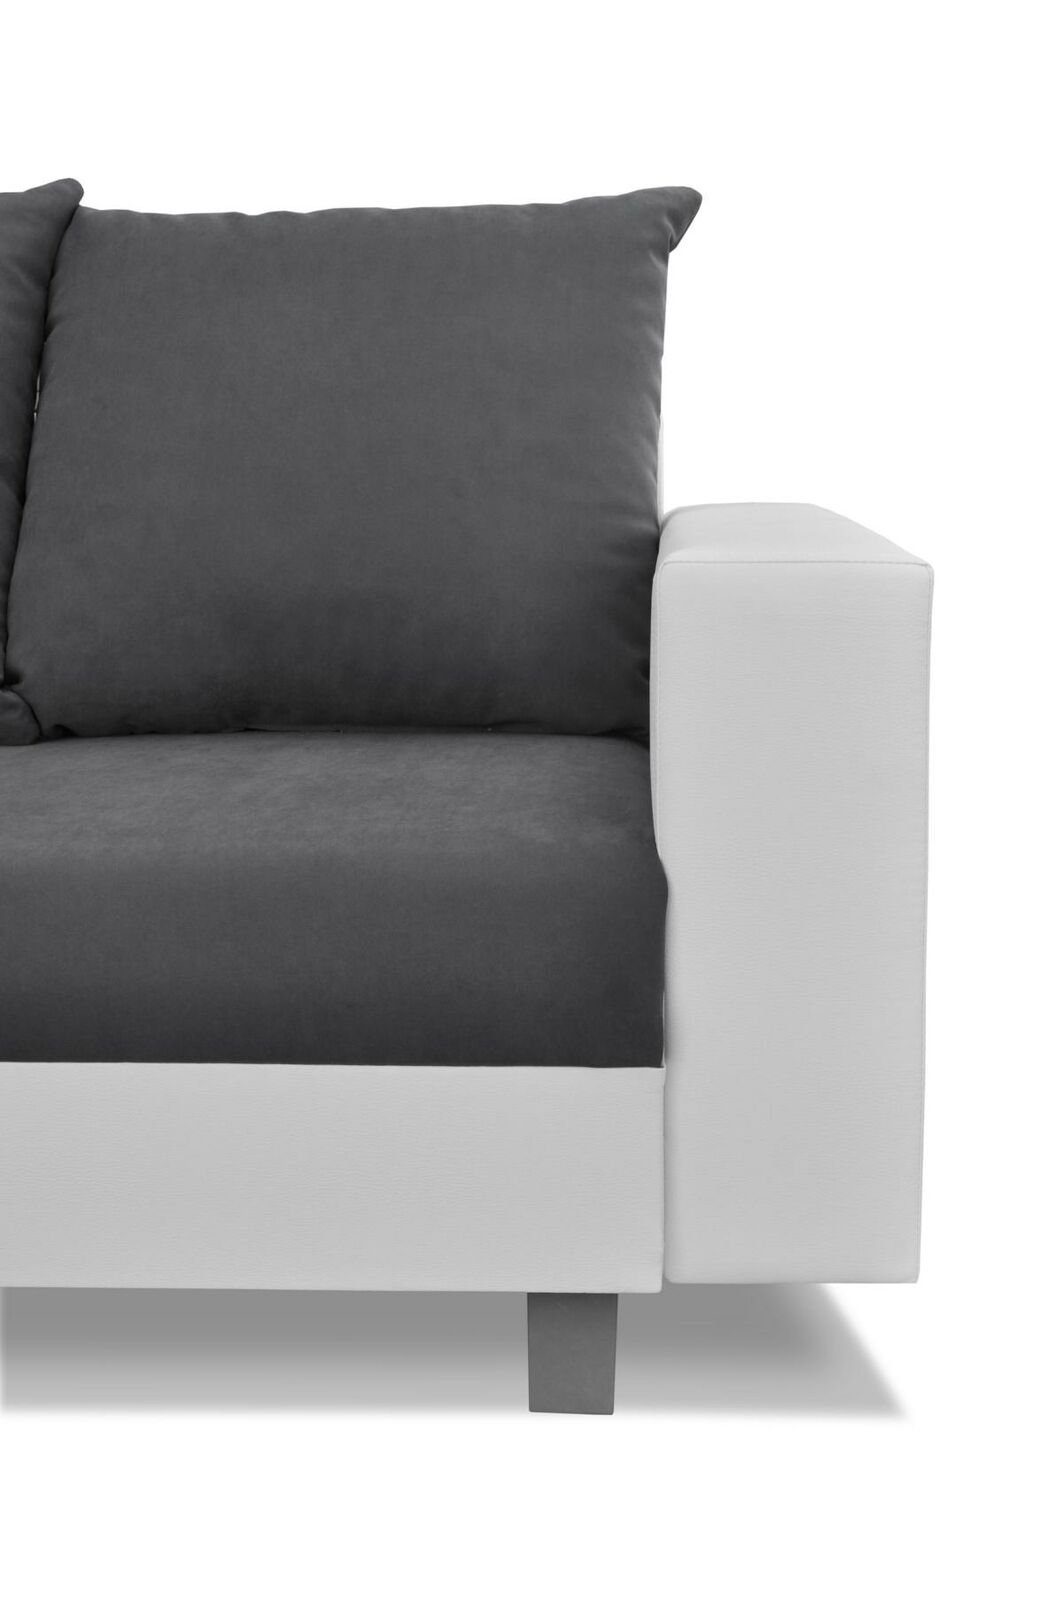 Luxus Made L-Form Europe Weiße JVmoebel in Couch Sofa Wohnladschaft Sofa Neu, Textilmöbel